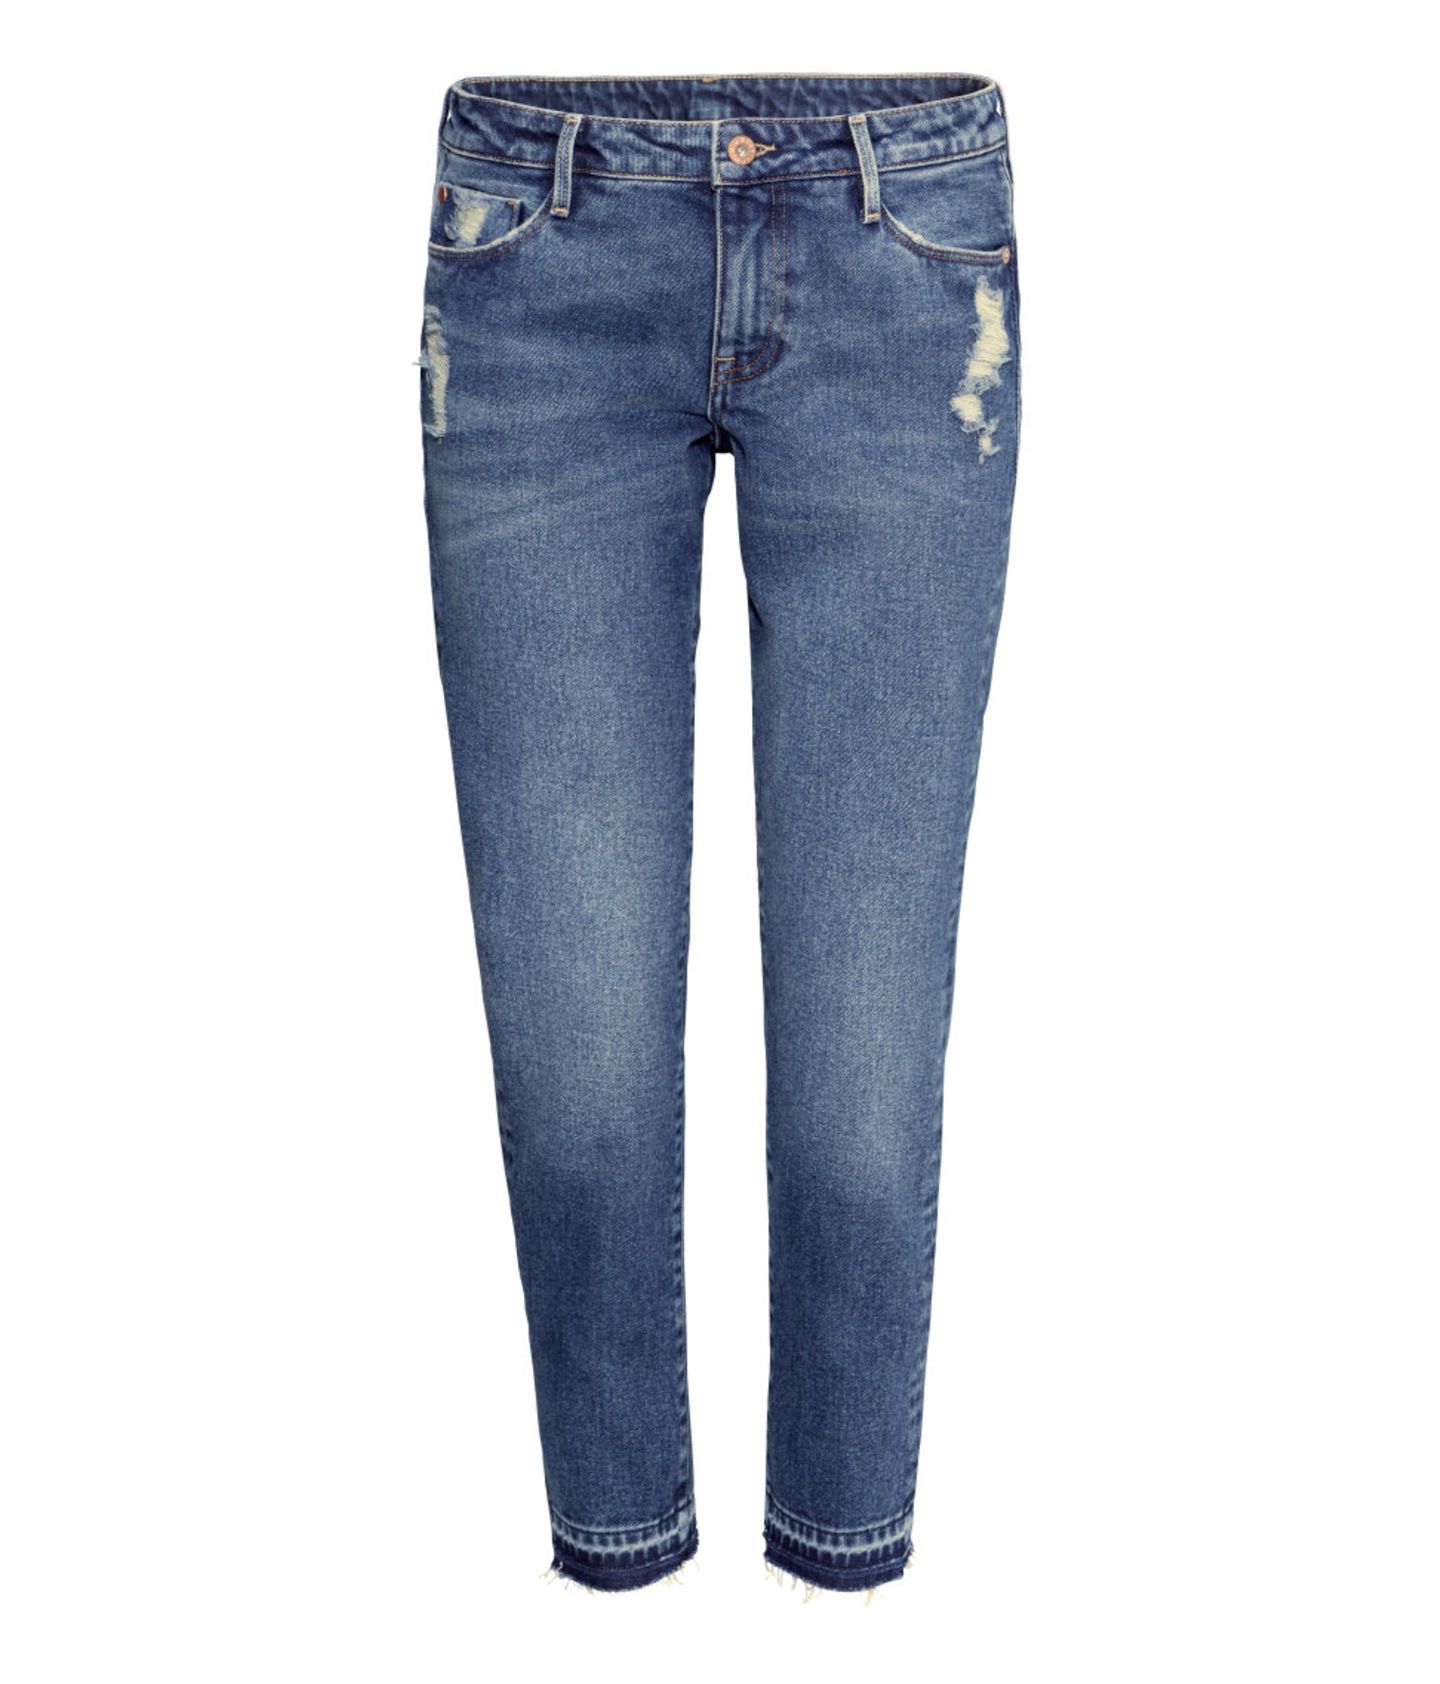 Figurberatung Jeans: Keine Taille und flacher Po